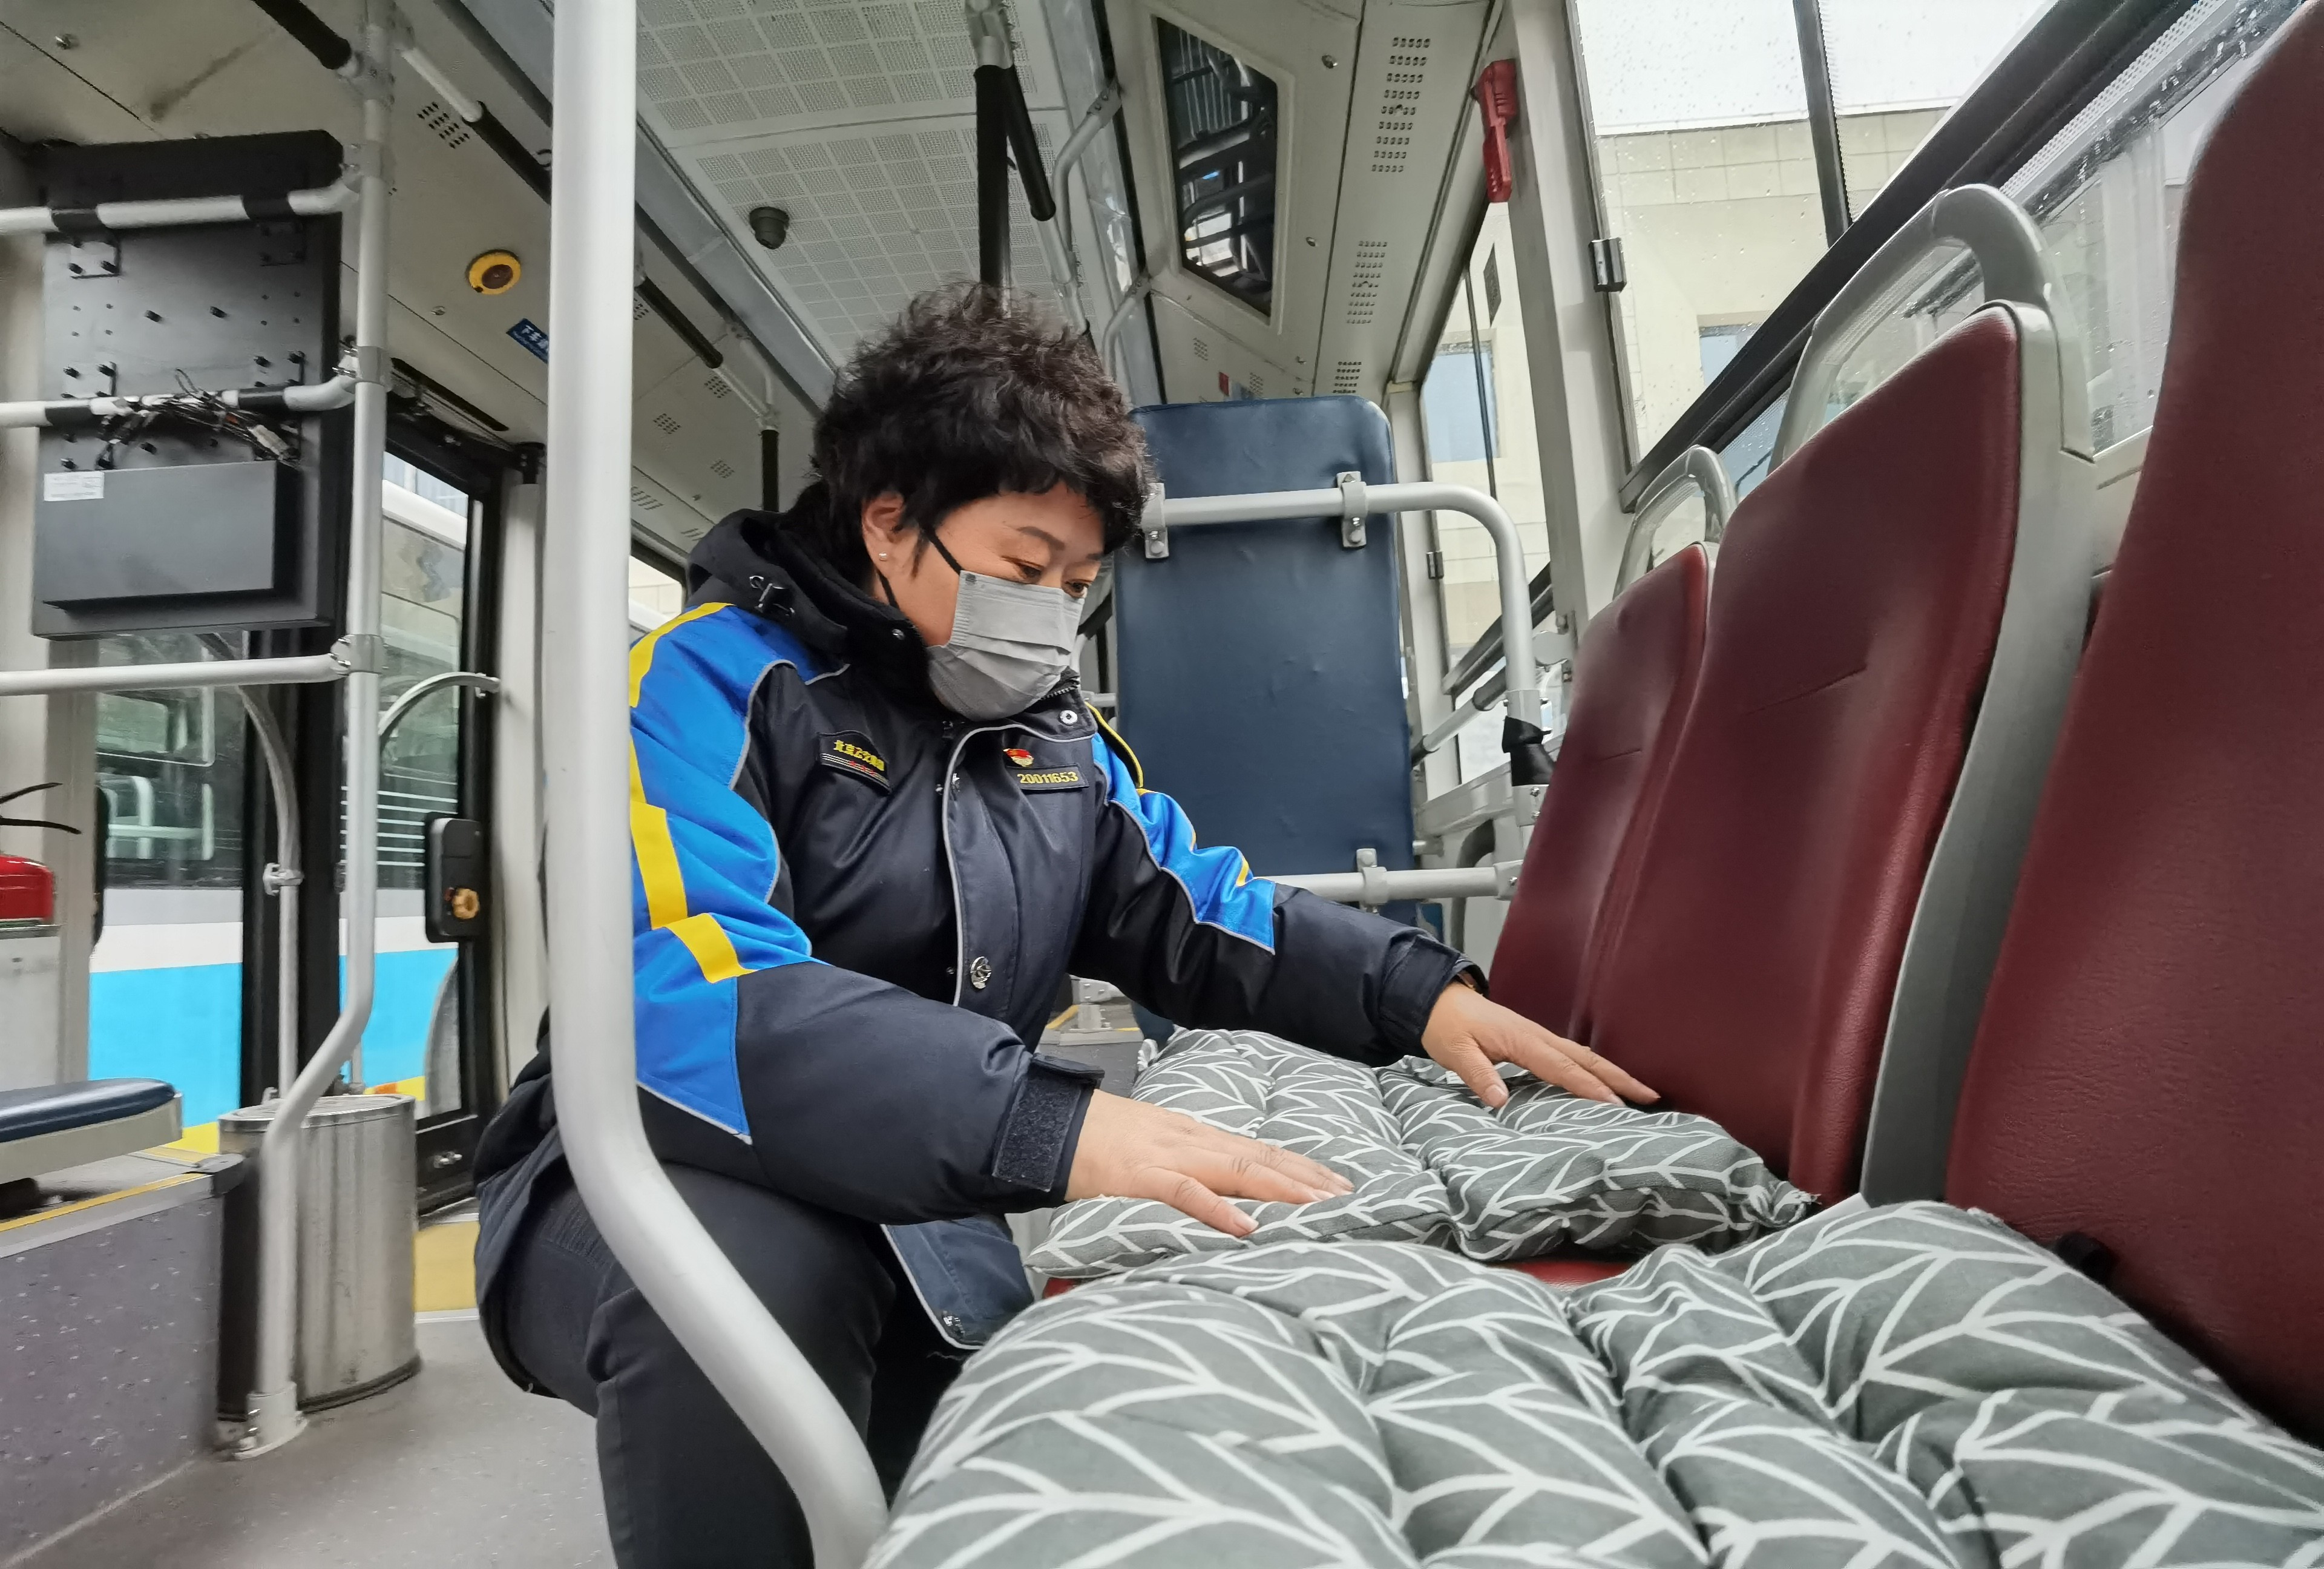 北京公交线路适当缩小发车间隔 减少乘客在寒风中等候时间